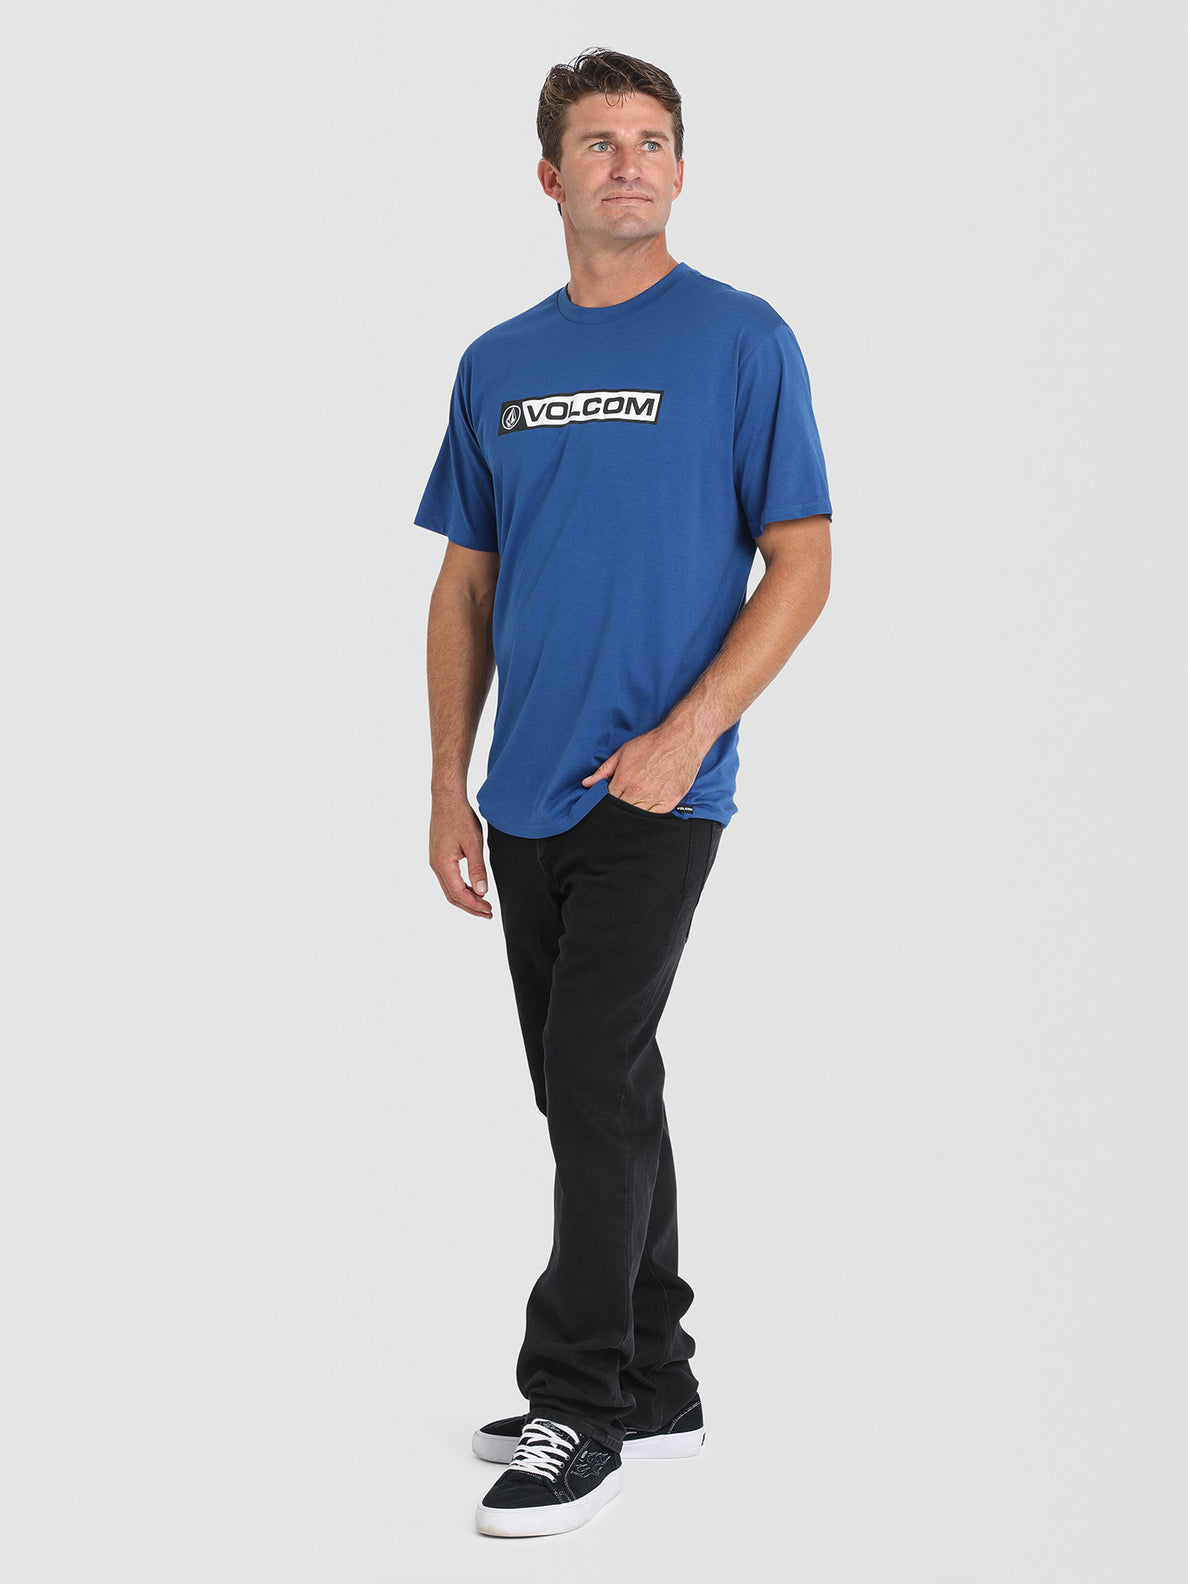 Blocker Short Sleeve T-Shirt - Bold Blue